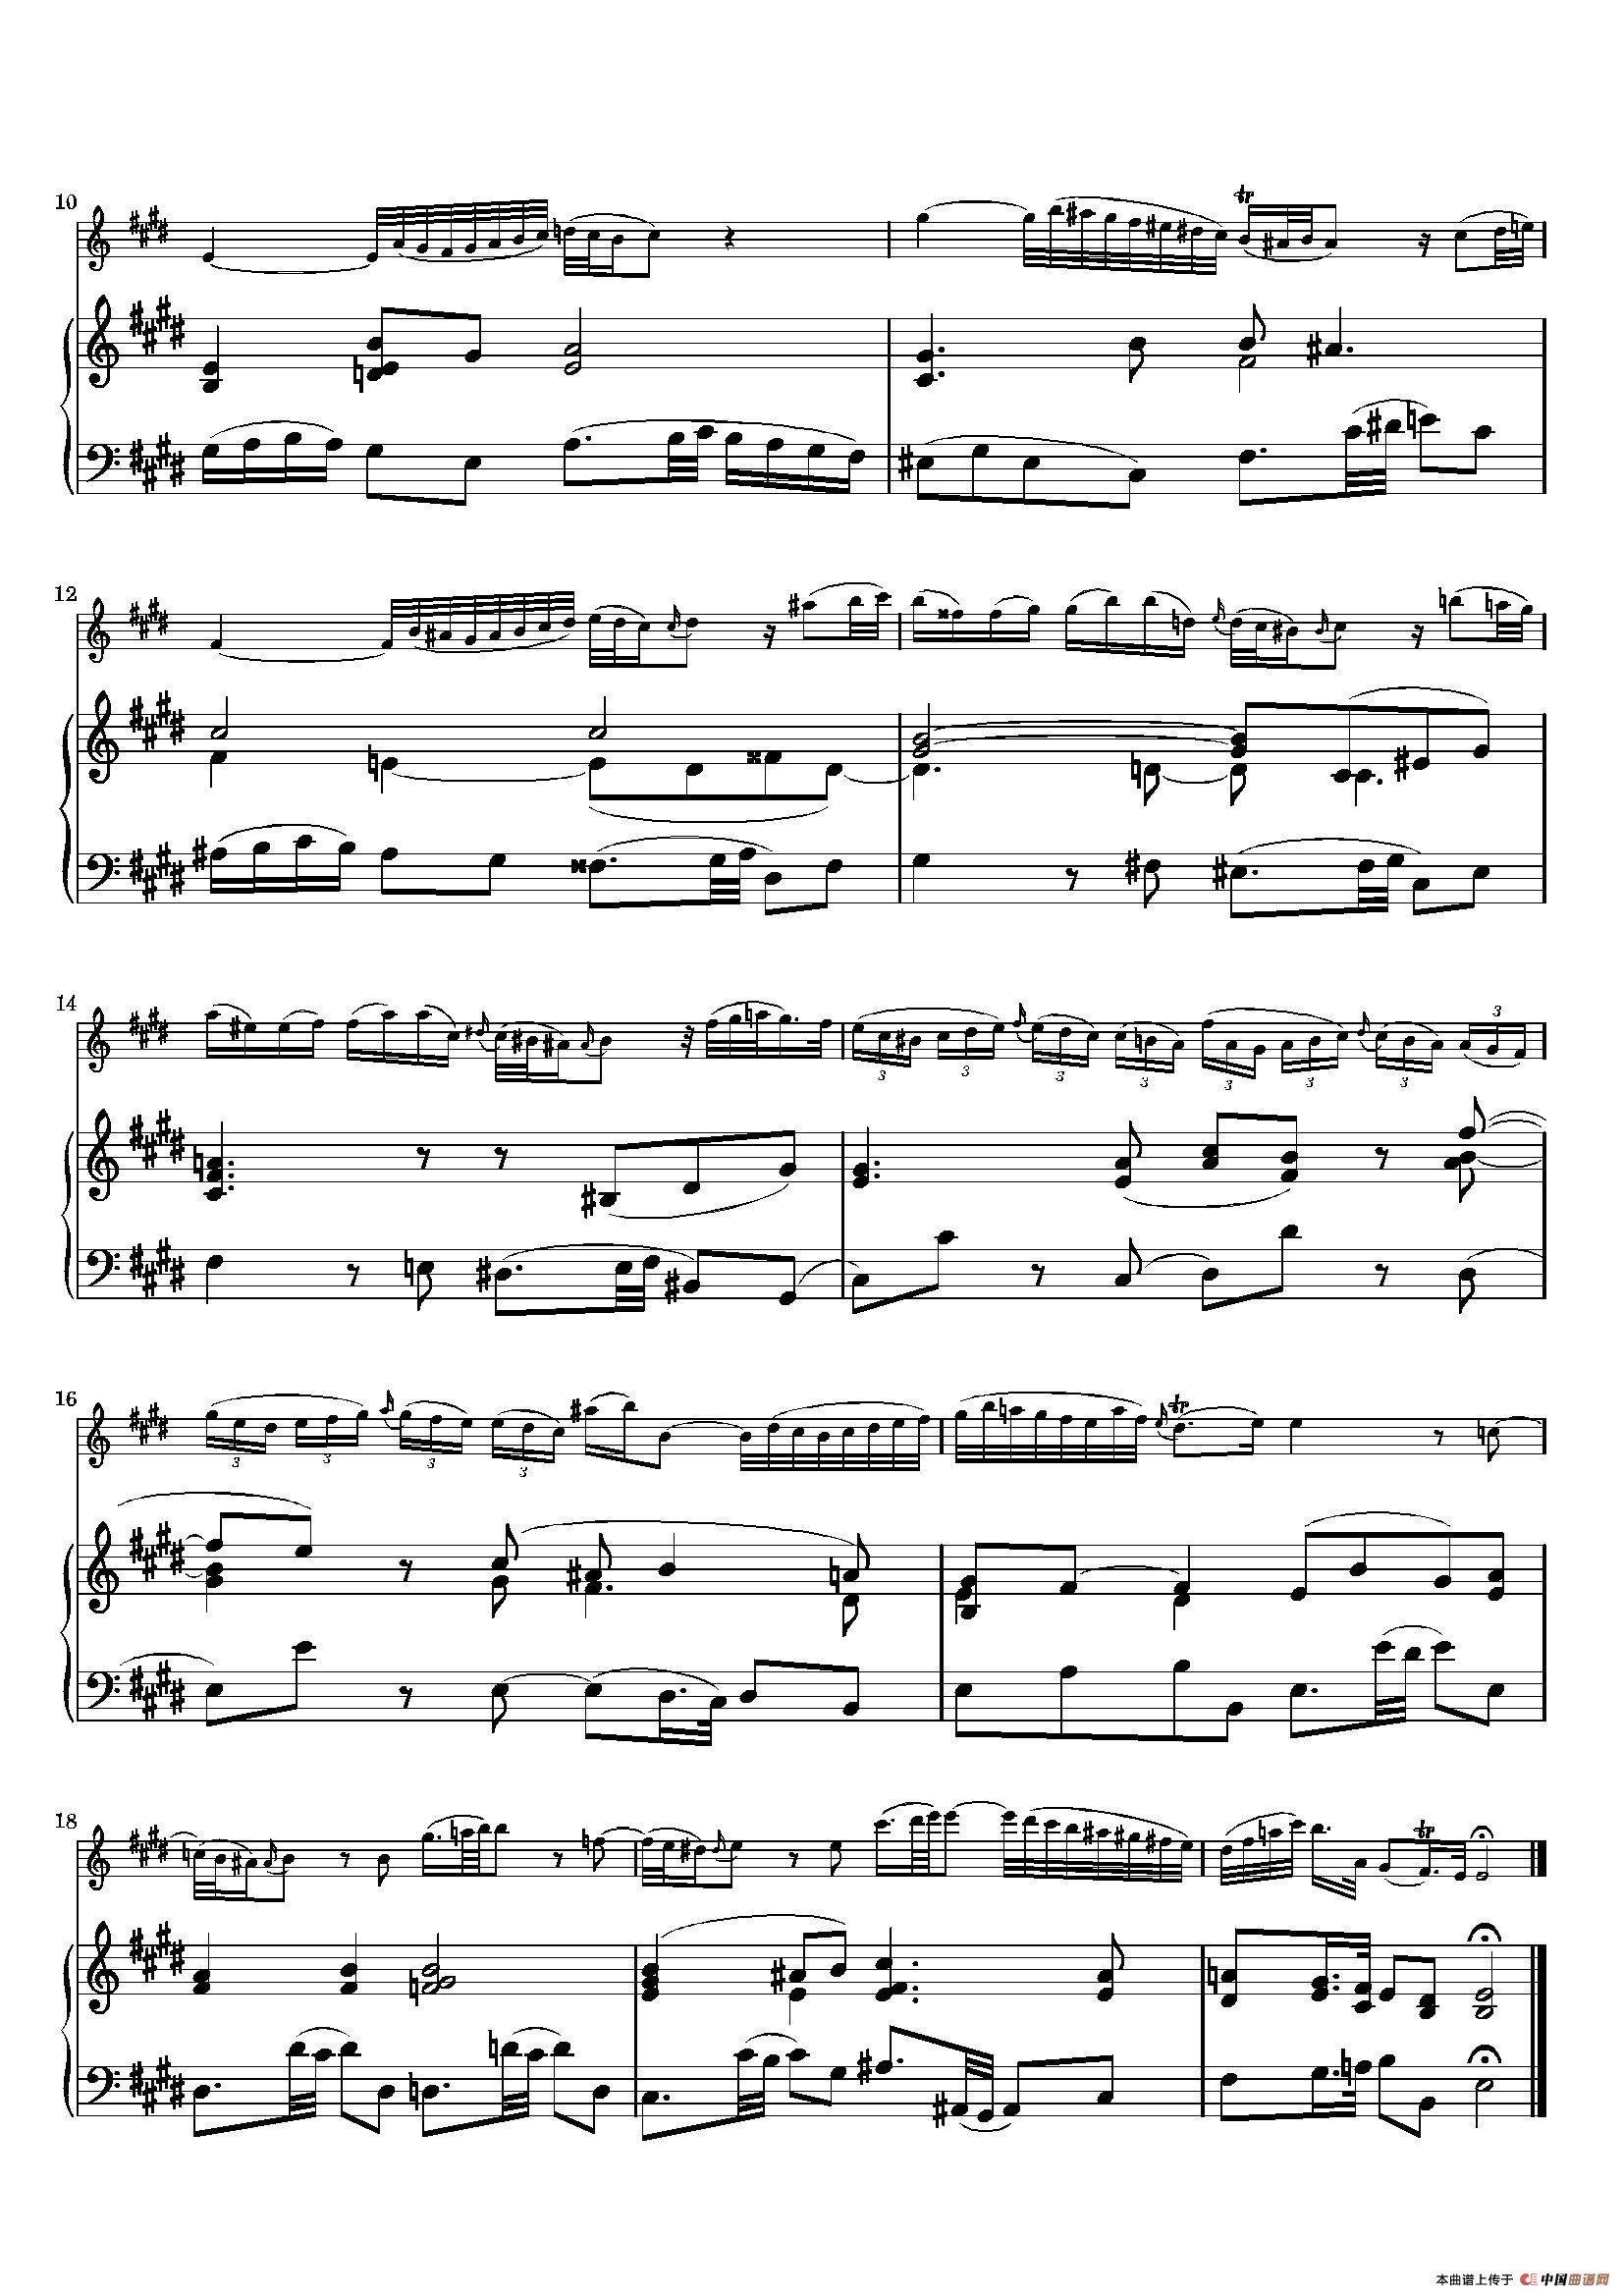 Adagio Ma Non Tanto（BWV1035 ）